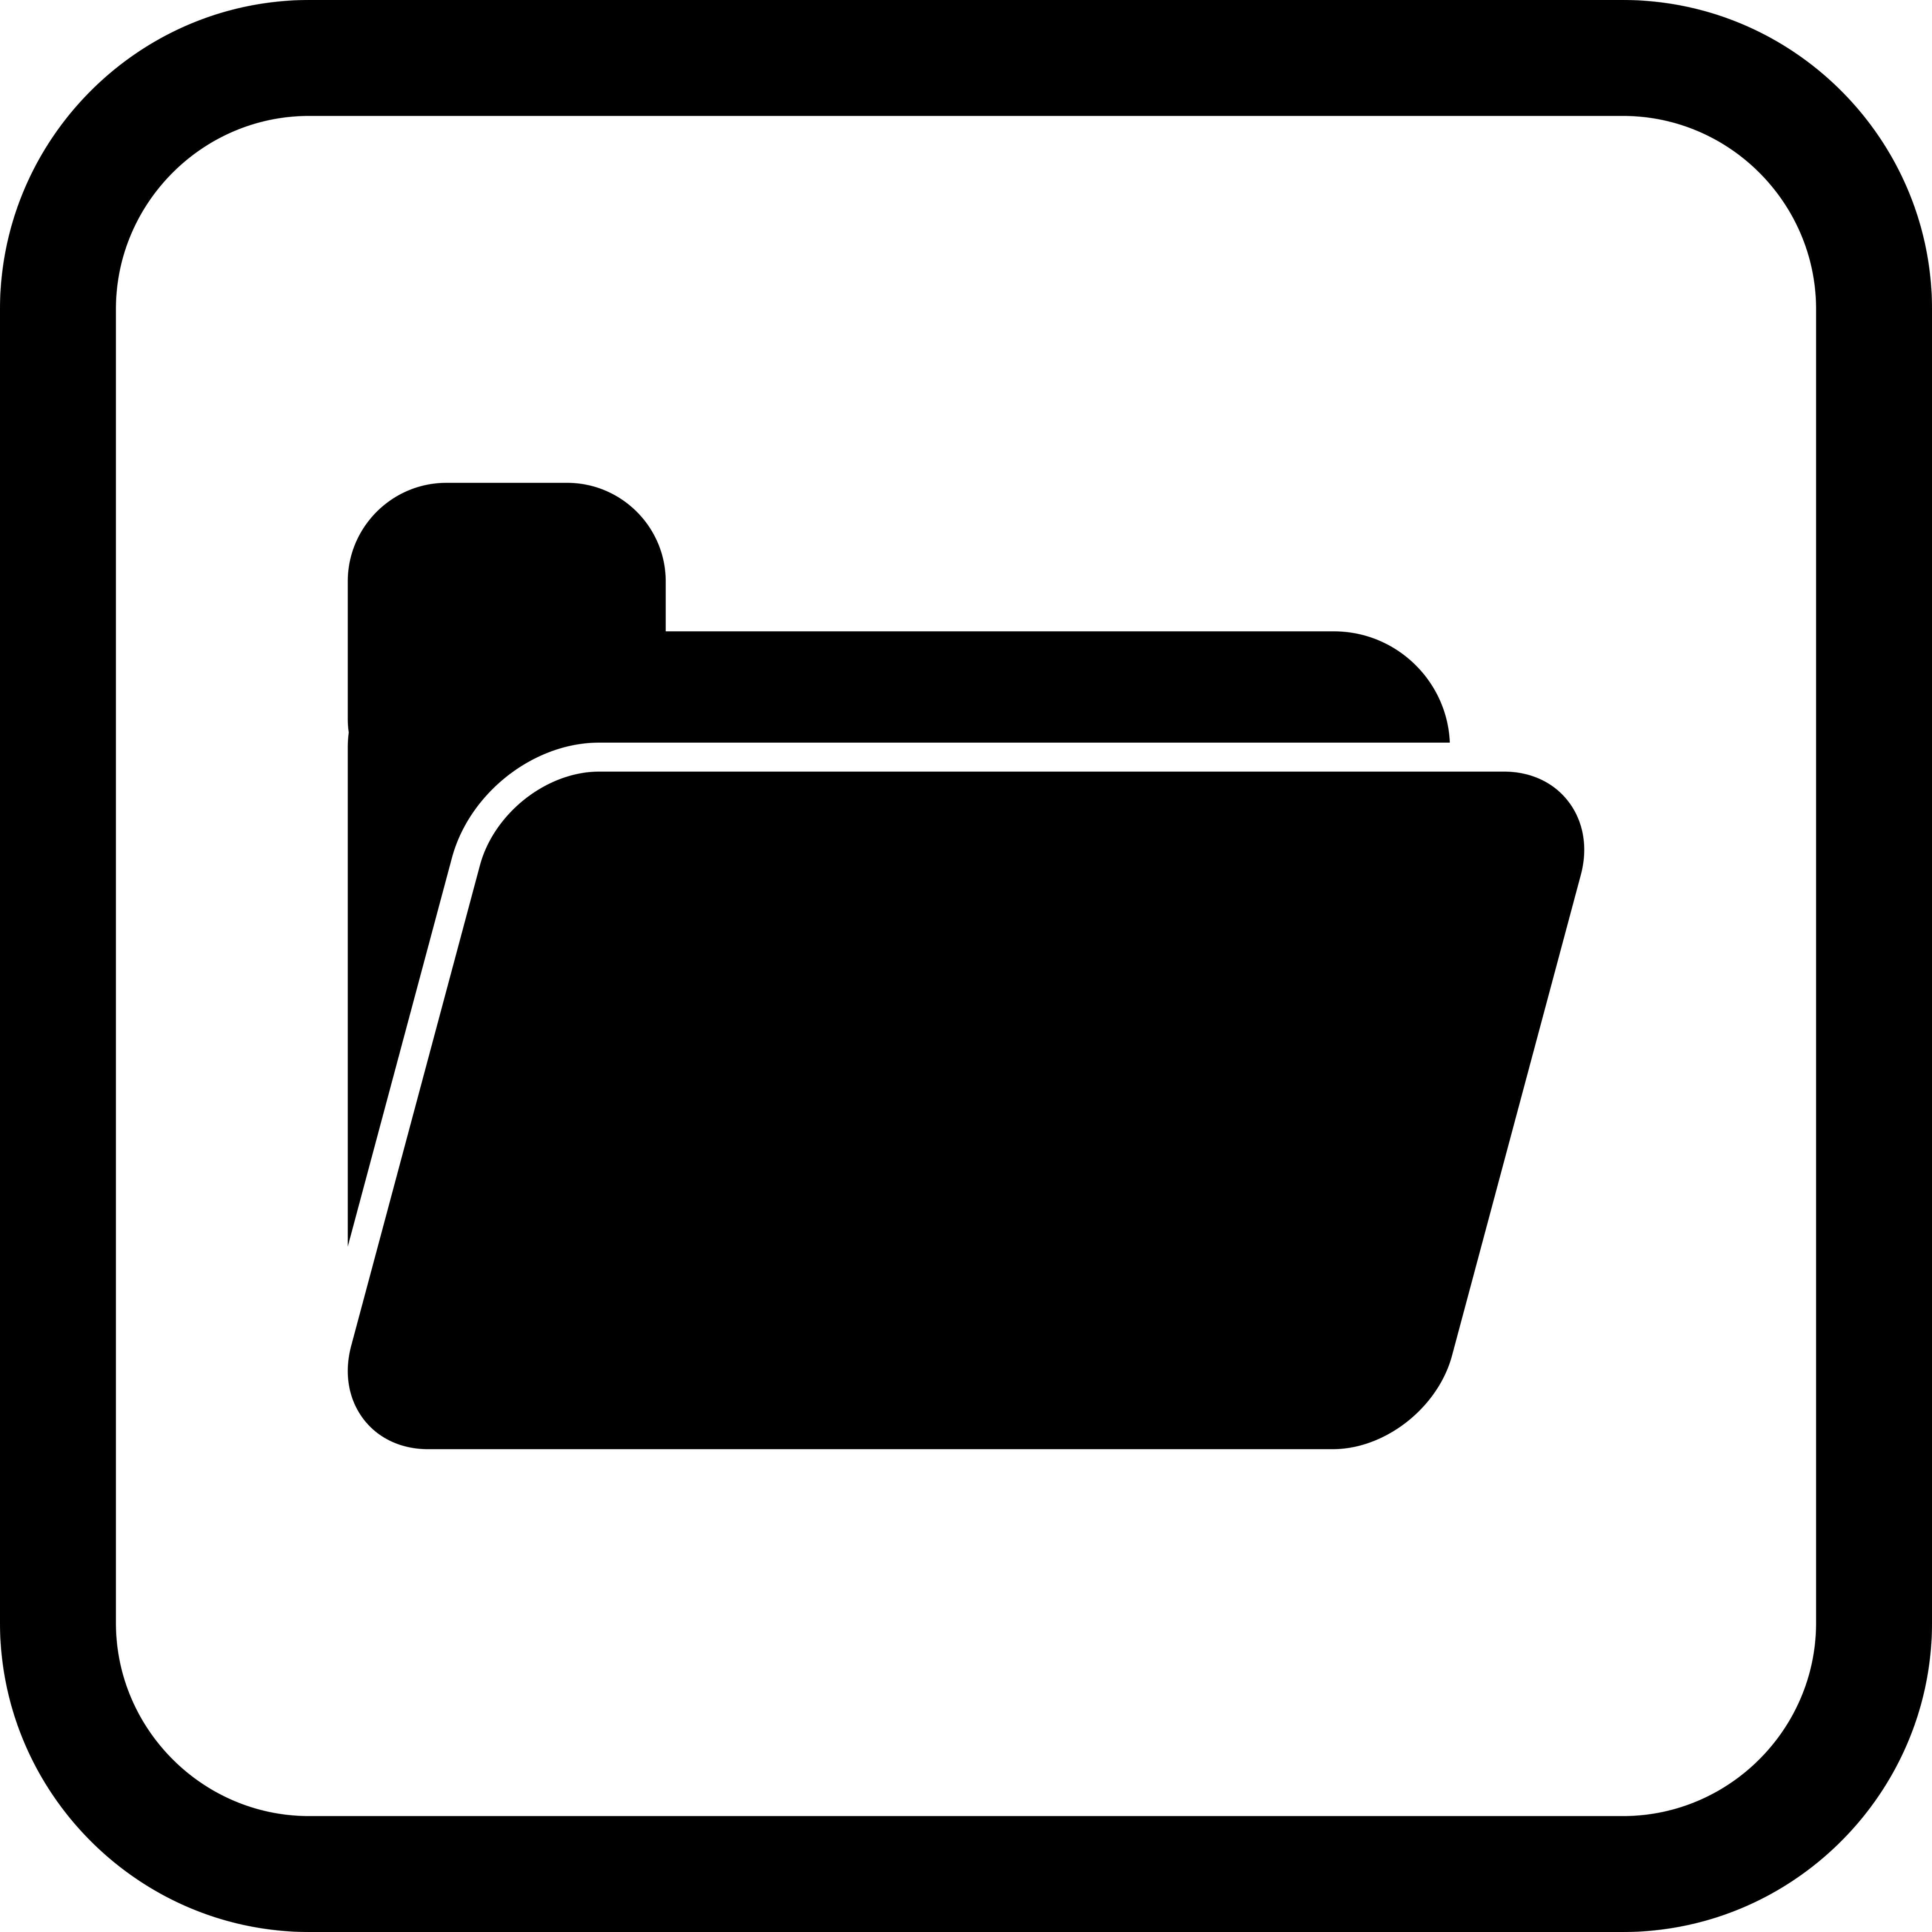 folder icons